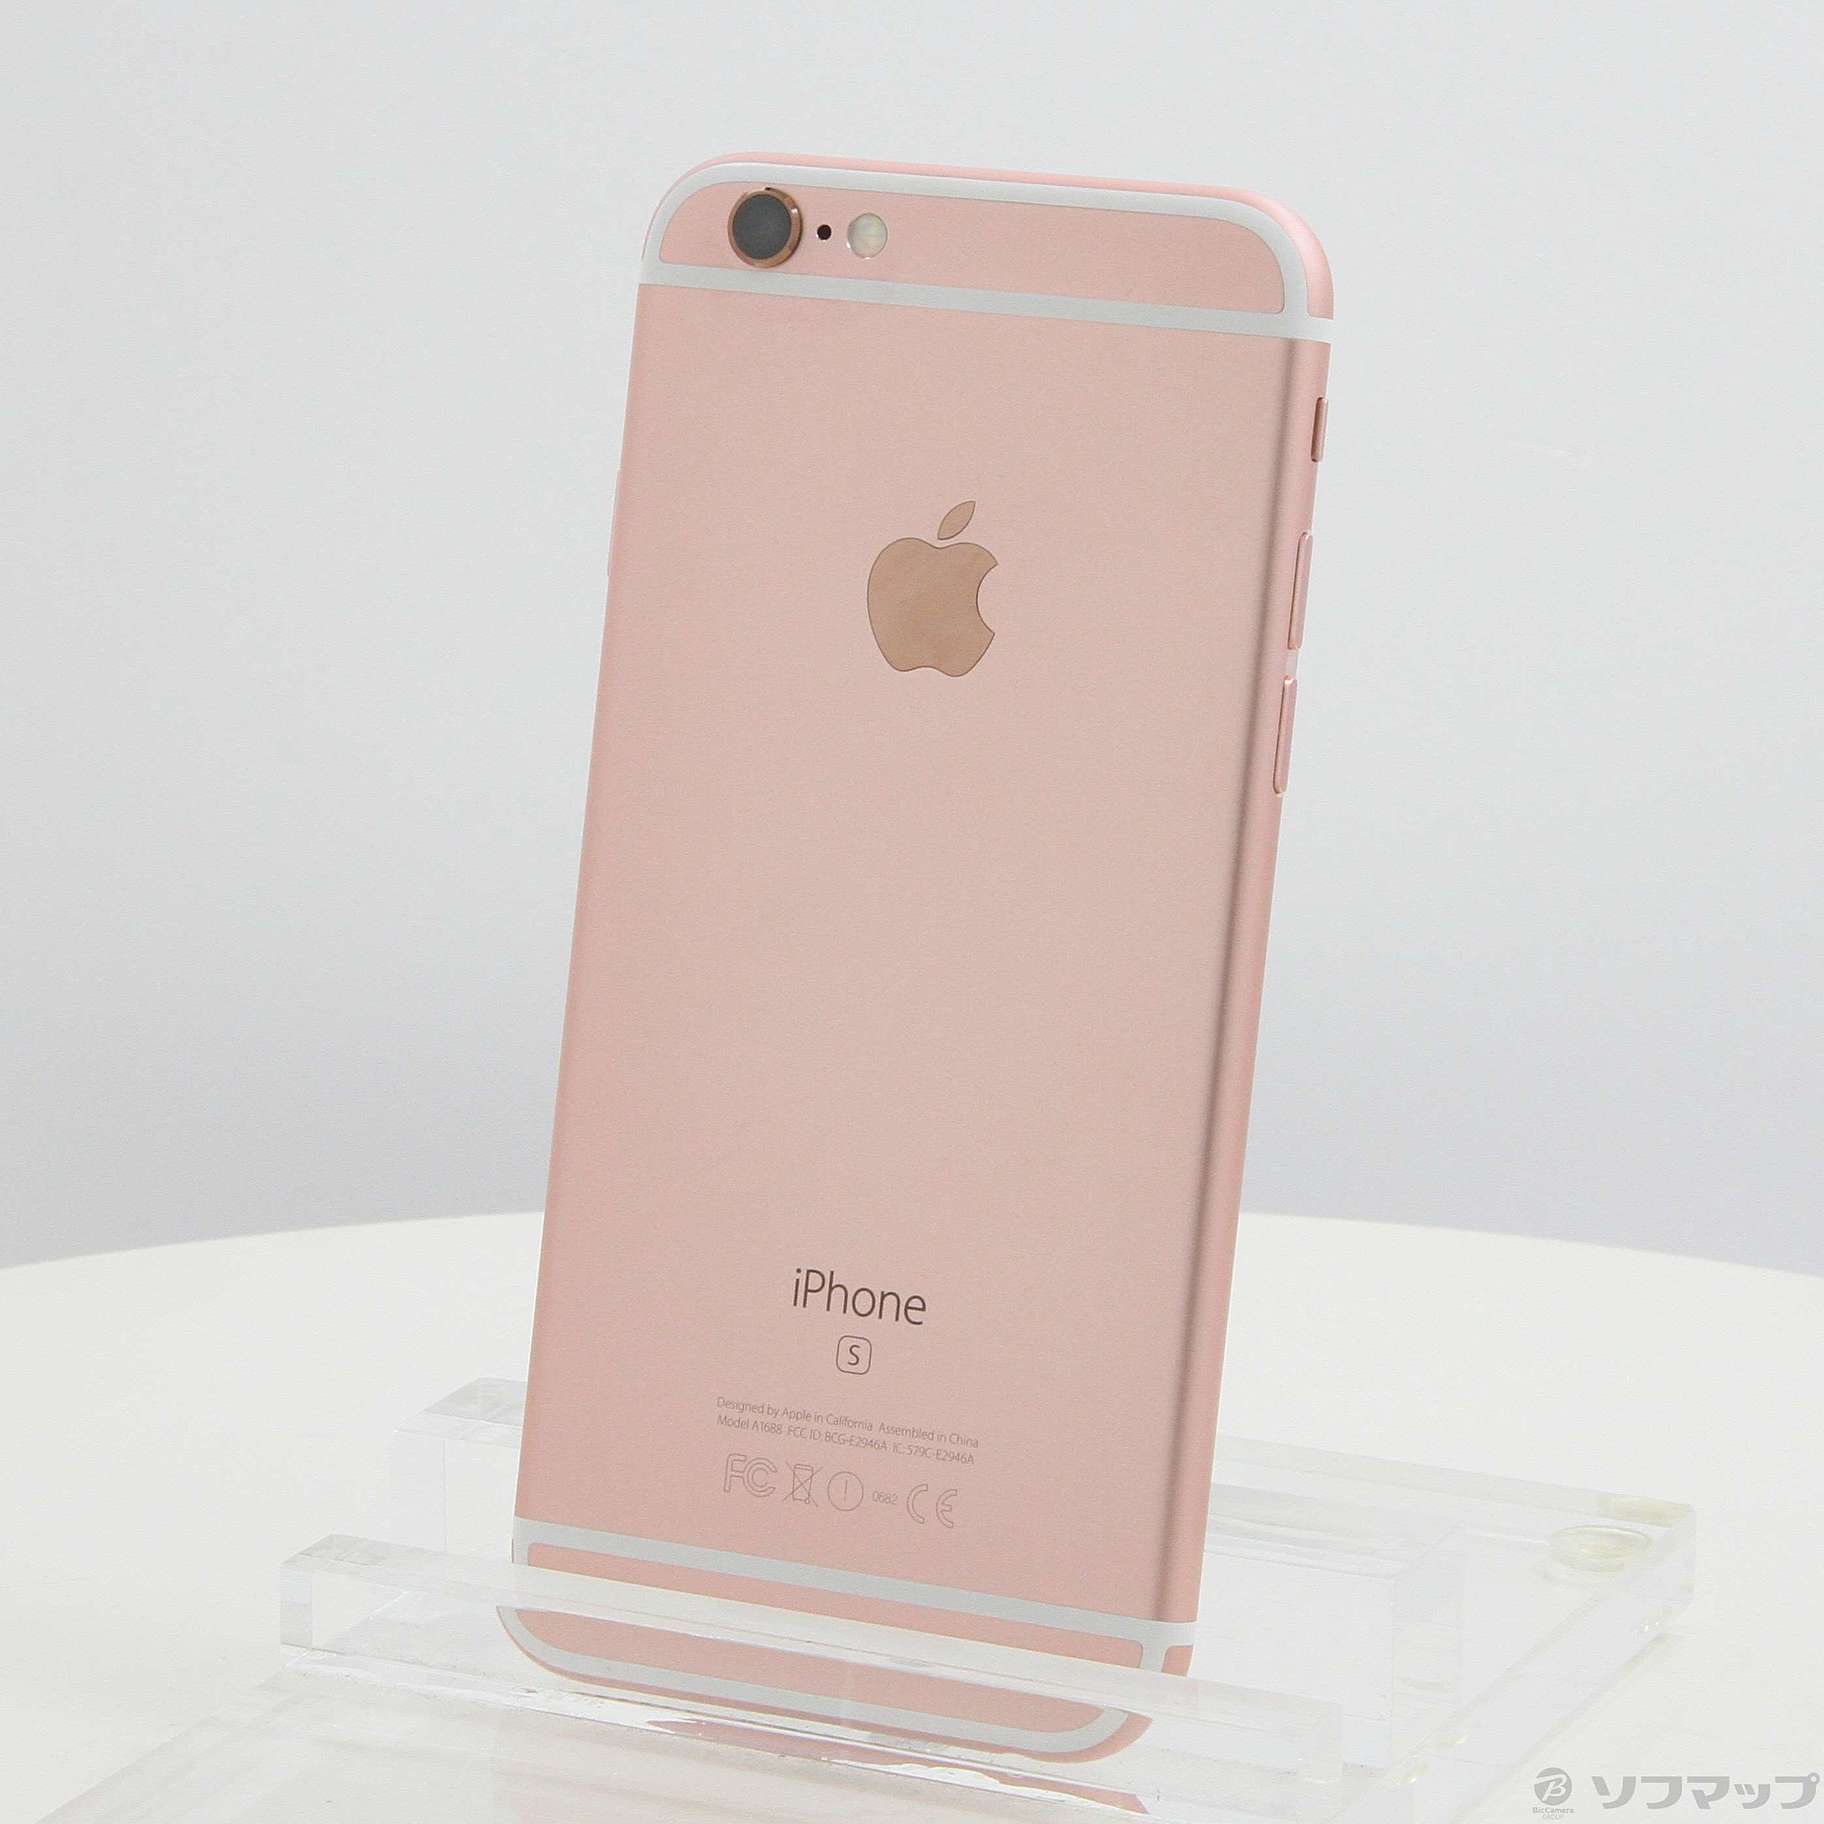 最新品特価】 iPhone 6s ローズゴールド 16GB SoftBank 1cWjF-m49552158640